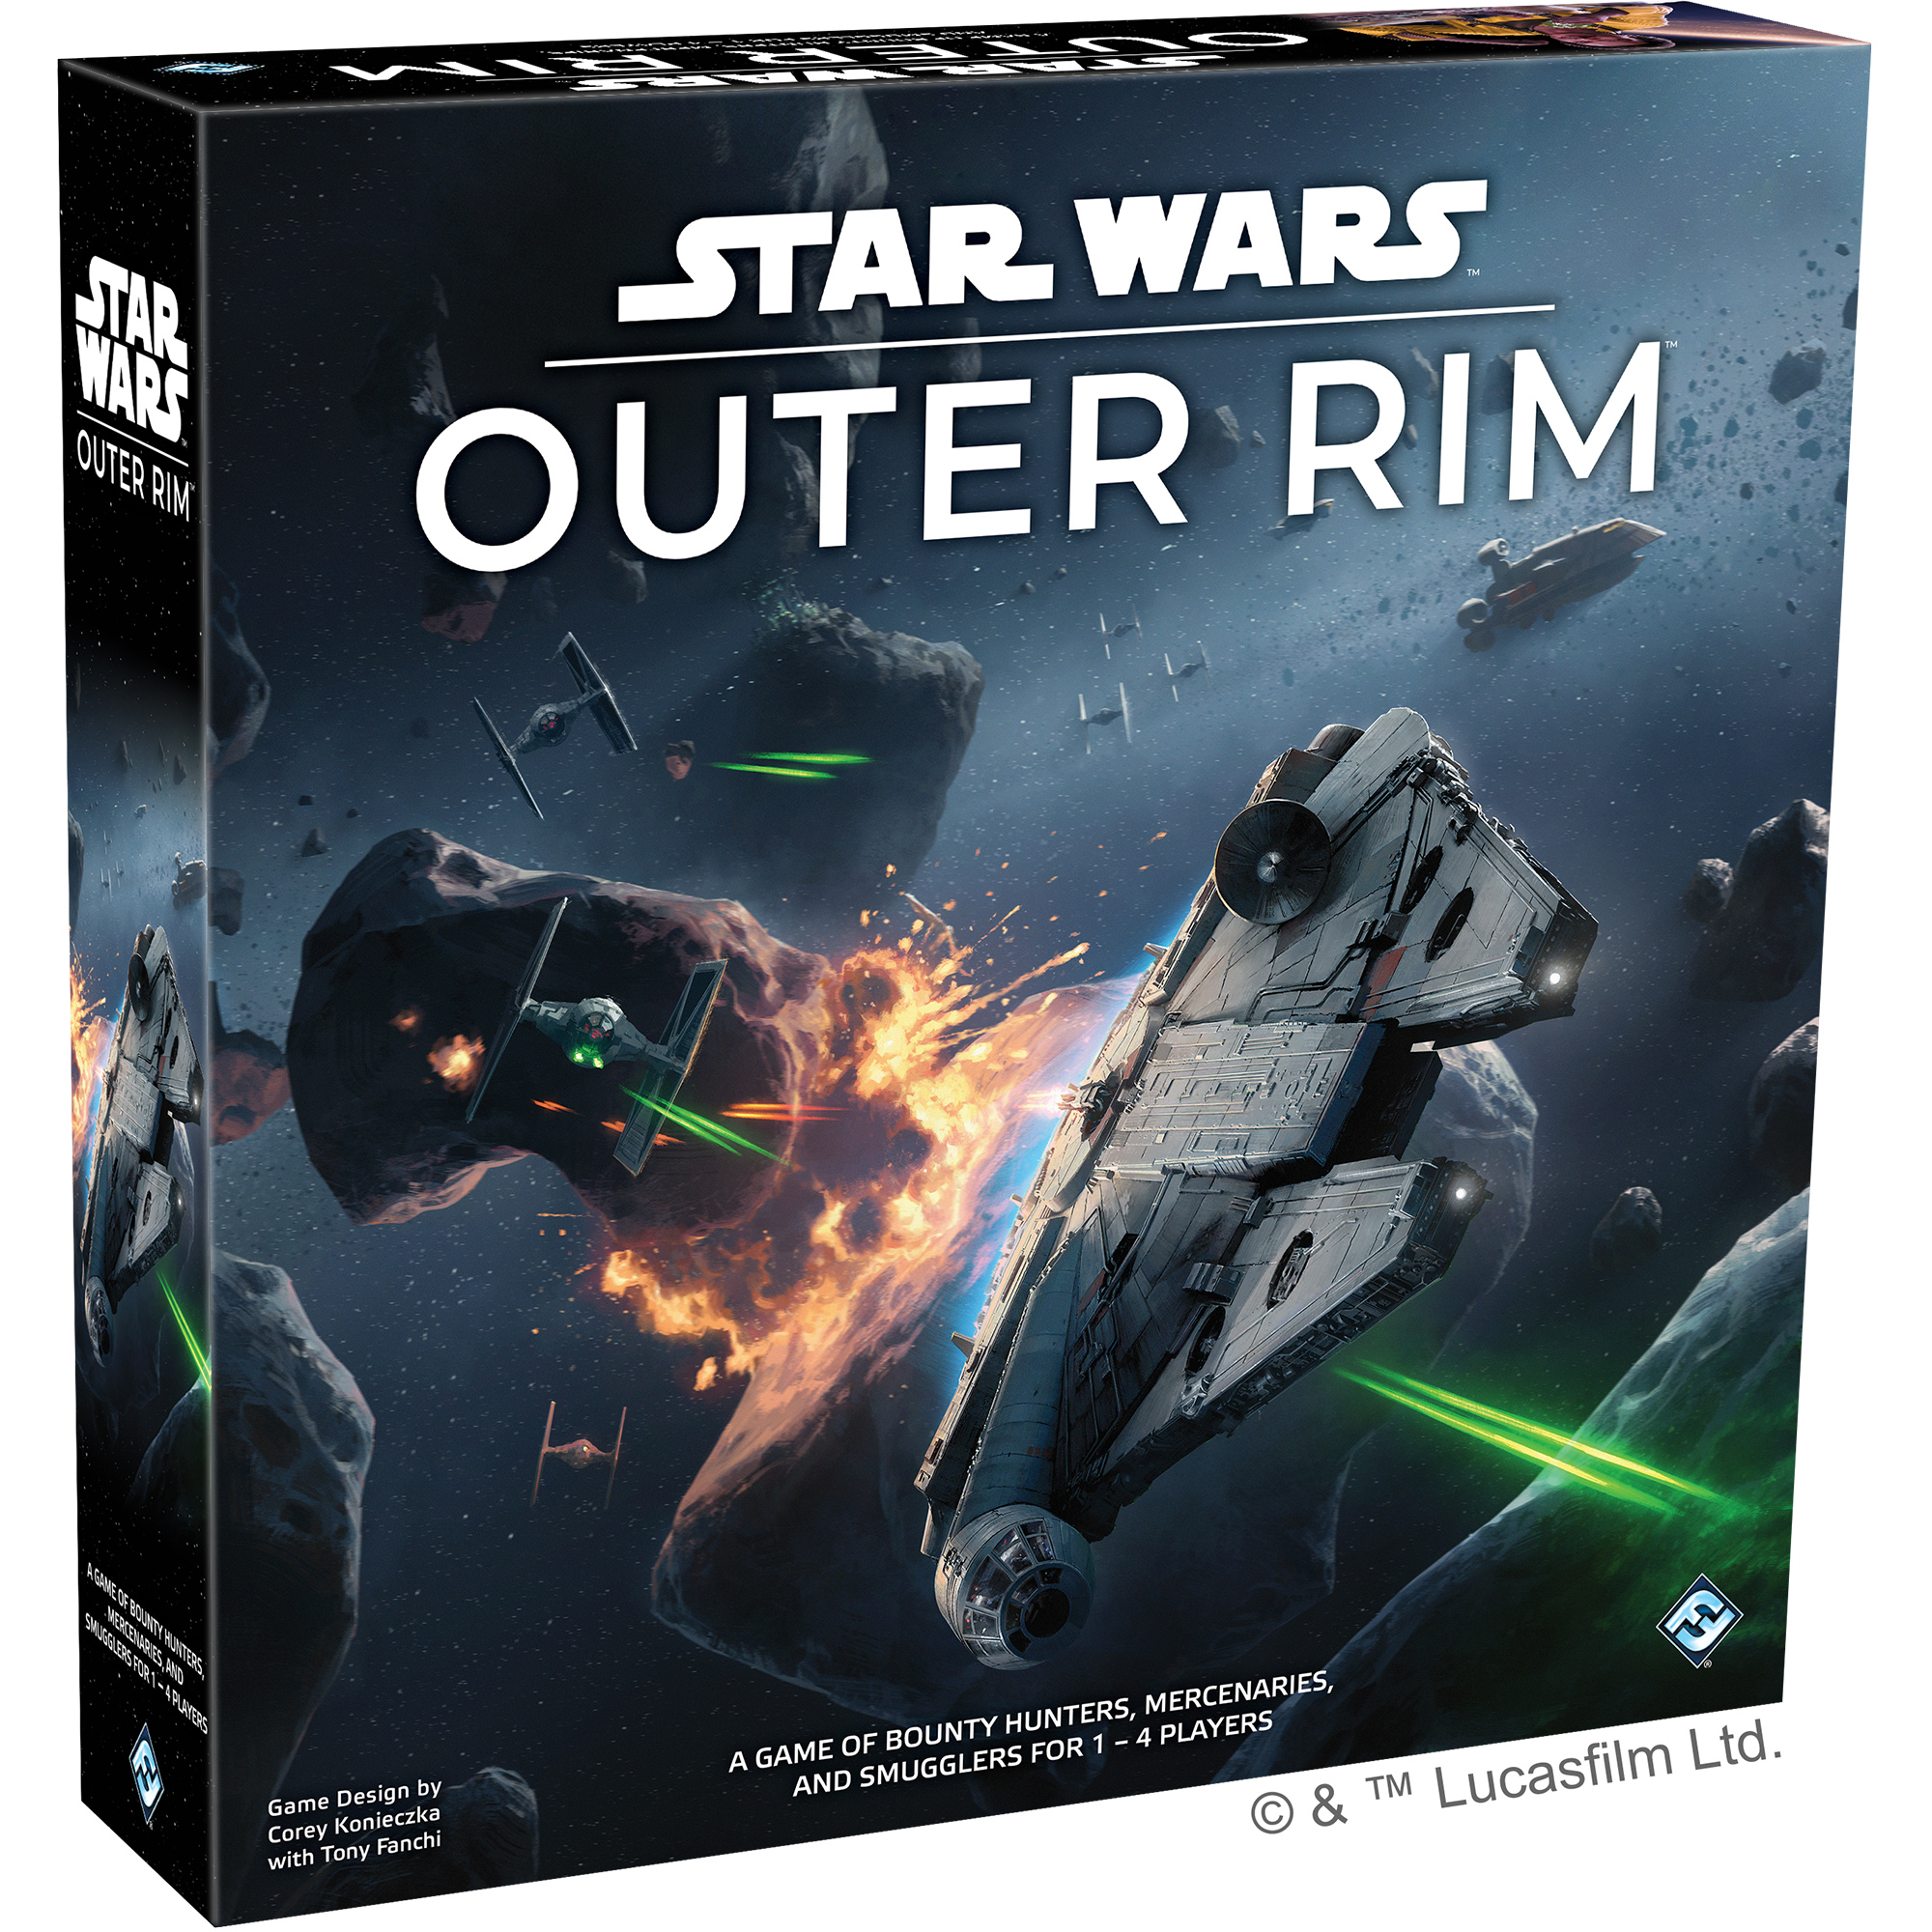 Star Wars: Outer Rim. Впечатления от игры